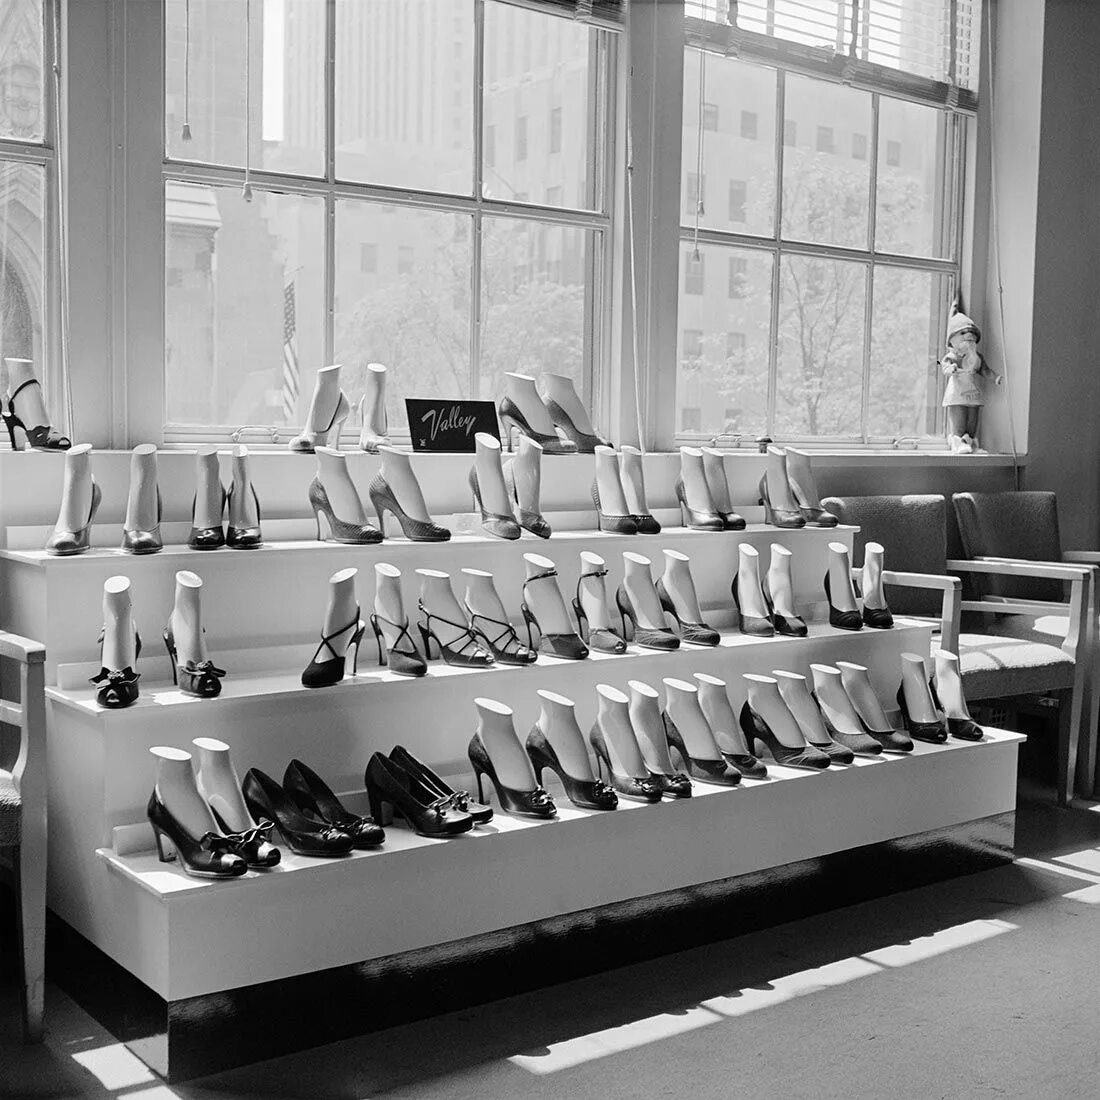 Нью Йорка 50-х Вивиан Майер,. Вивиан Майер фотограф. Советская обувь. Витрины магазинов 50х годов. Универмаг обуви